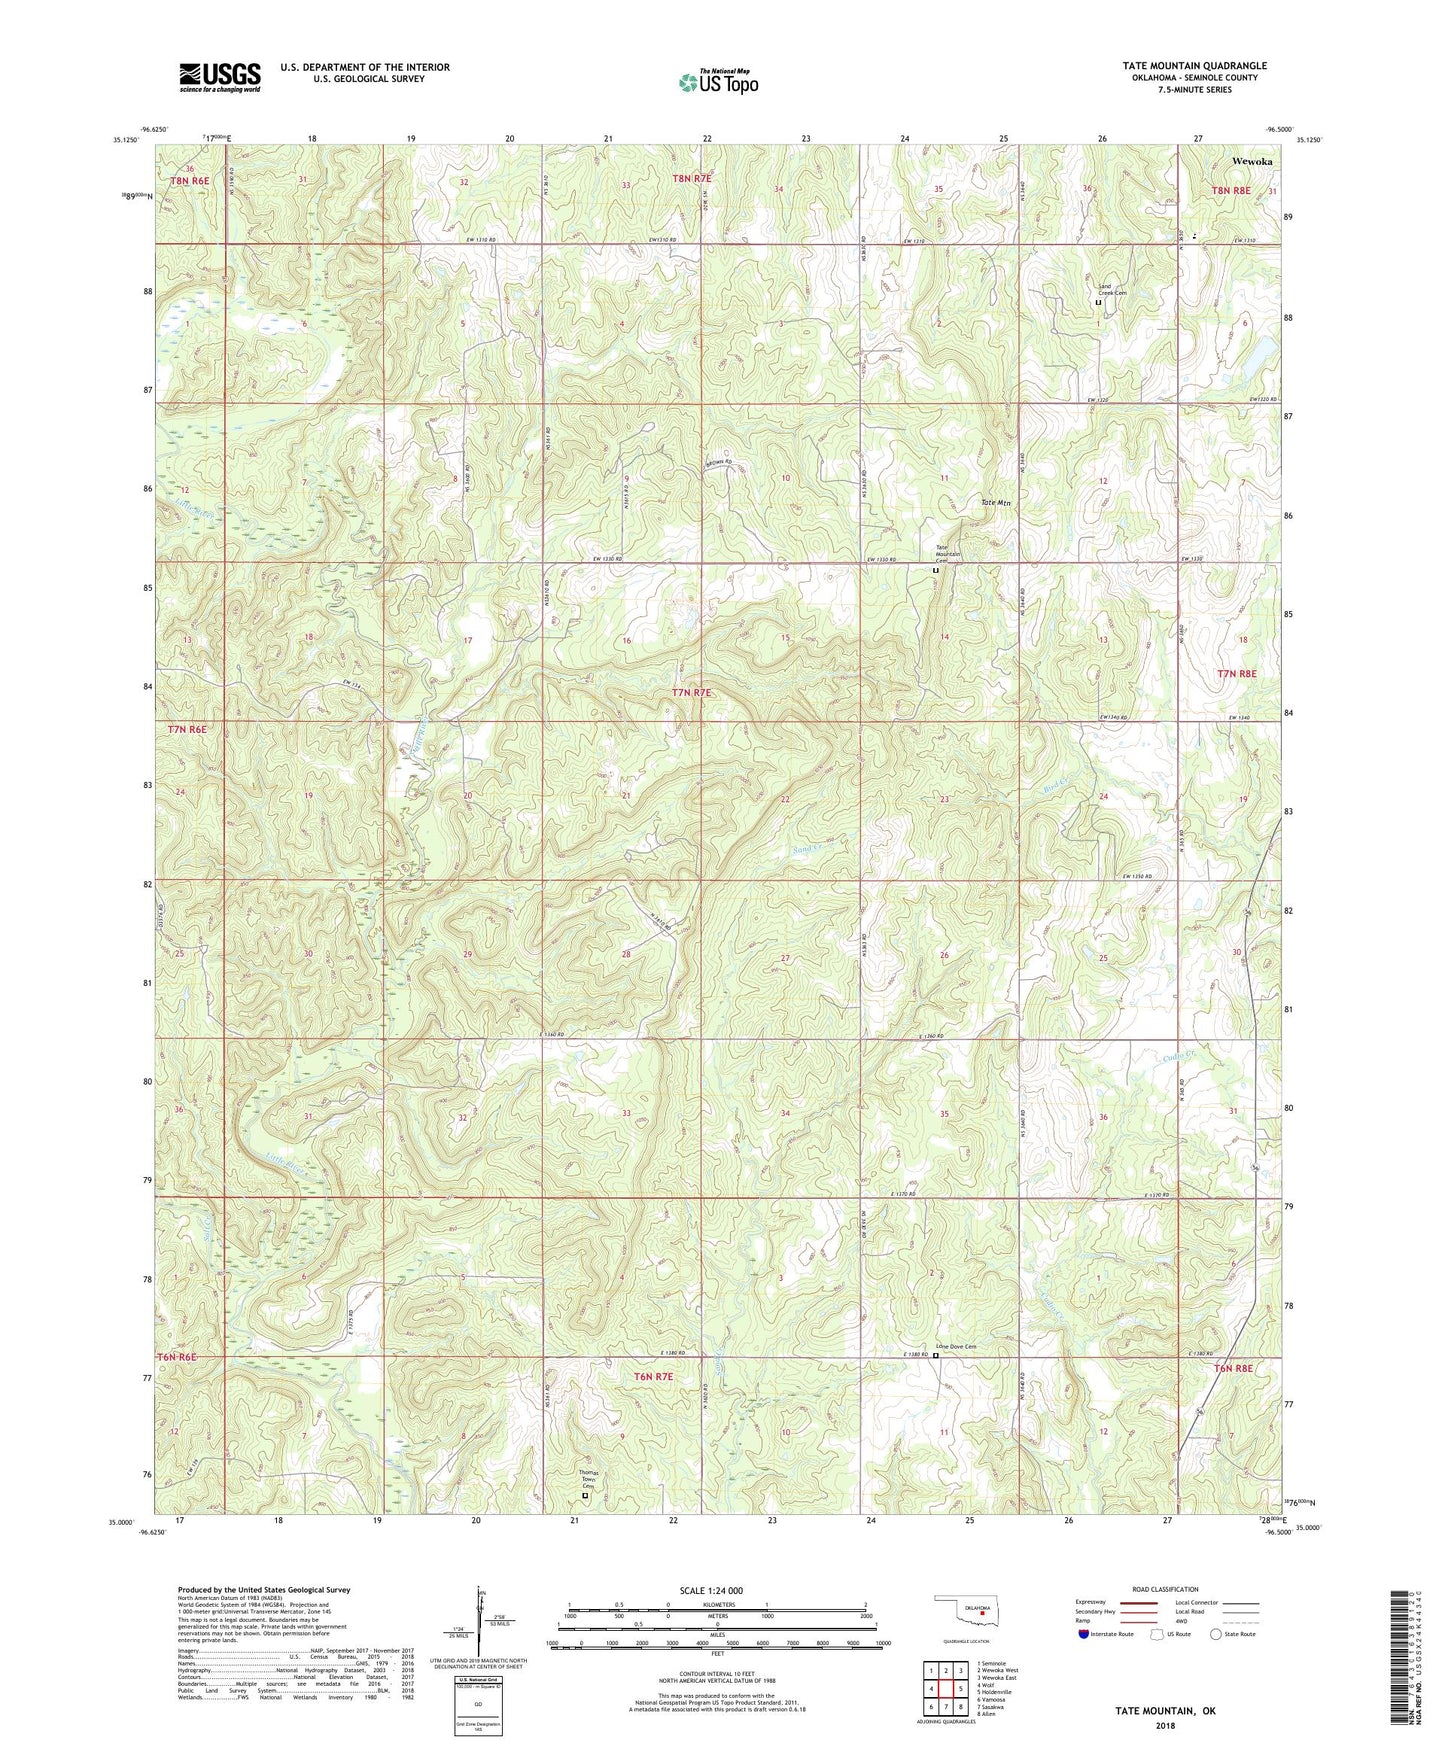 Tate Mountain Oklahoma US Topo Map Image